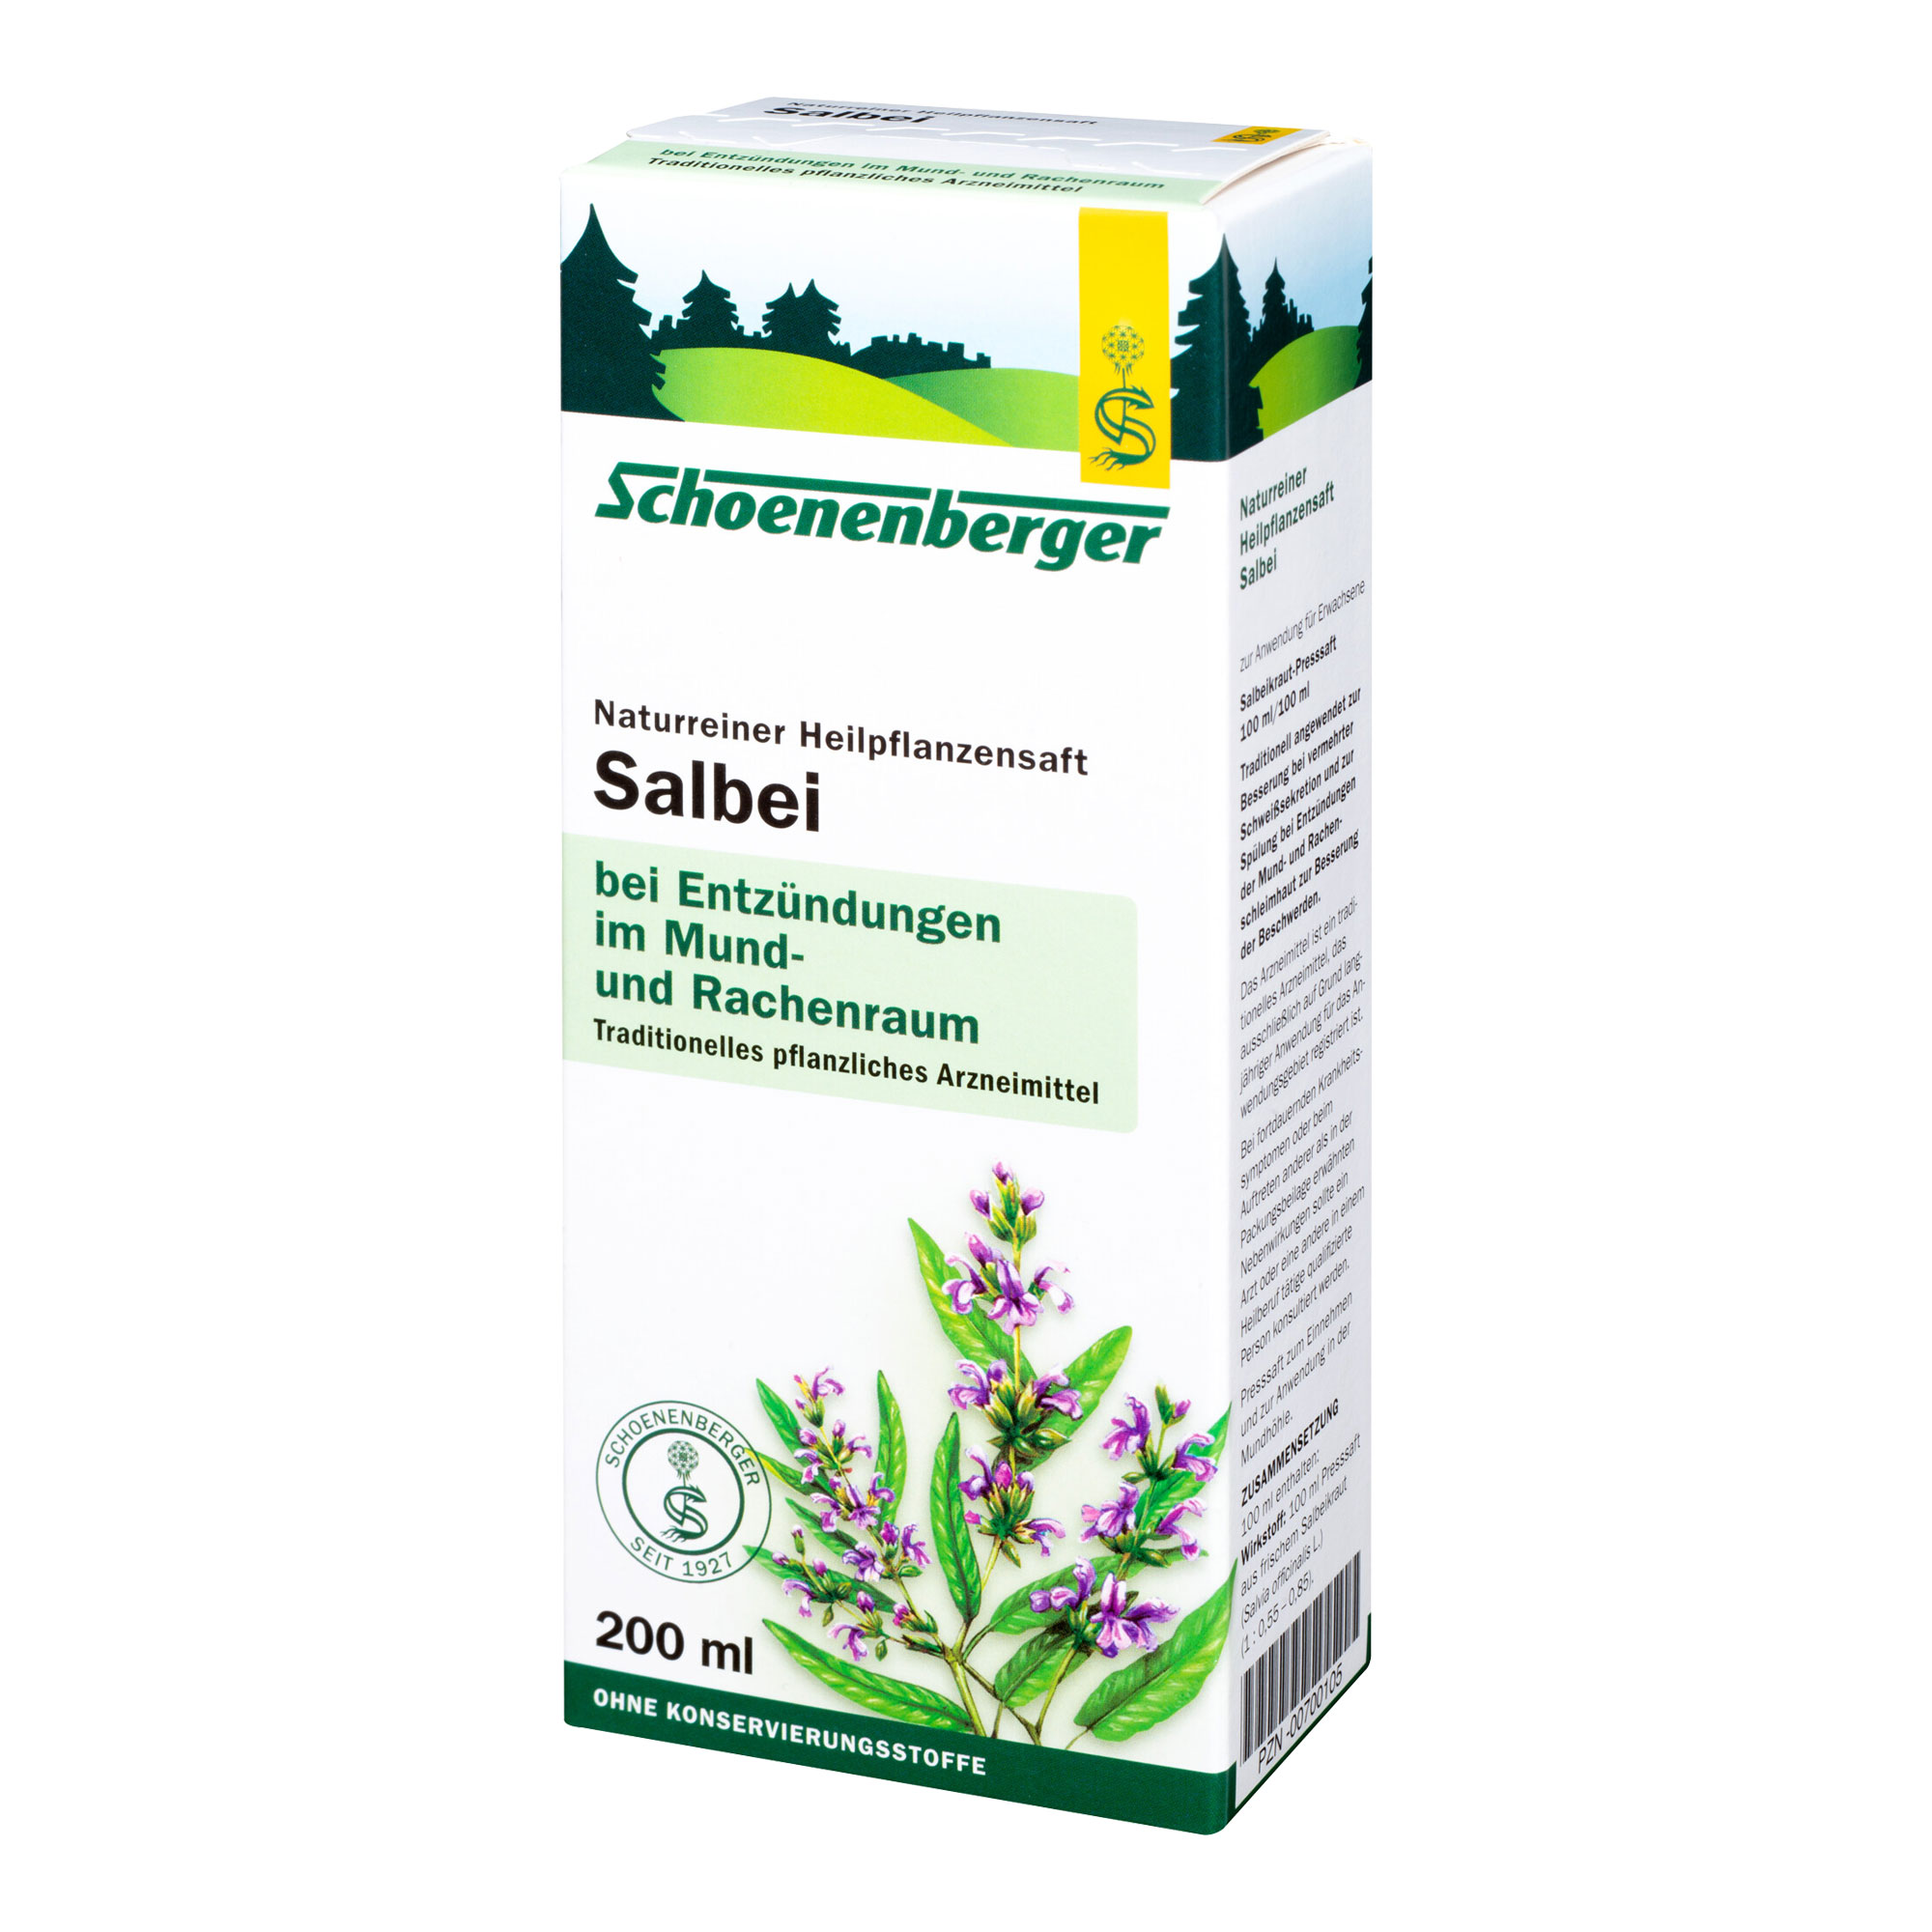 Traditionelles pflanzliches Arzneimittel zur Besserung bei vermehrter Schweißsekretion und zur Spülung bei Entzündungen der Mund- und Rachenschleimhaut.